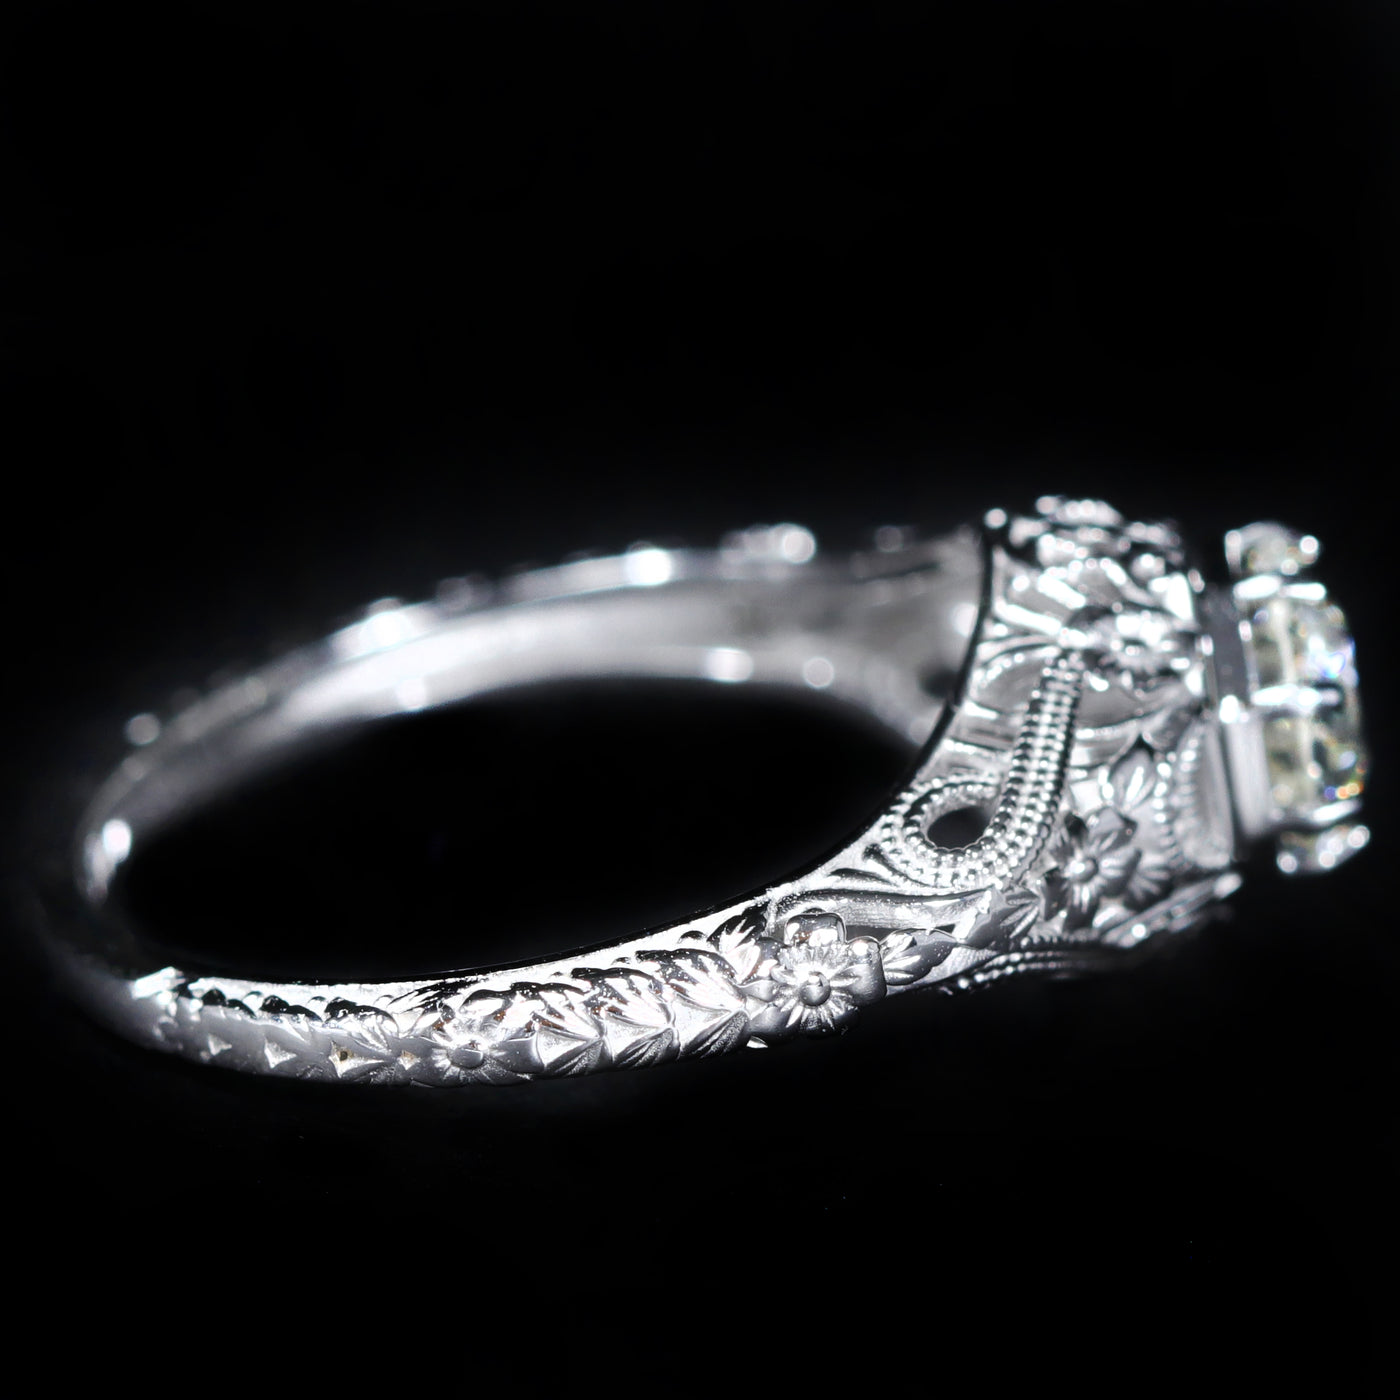 Estate 0.80 Carat Old European Cut Diamond Engagement Ring